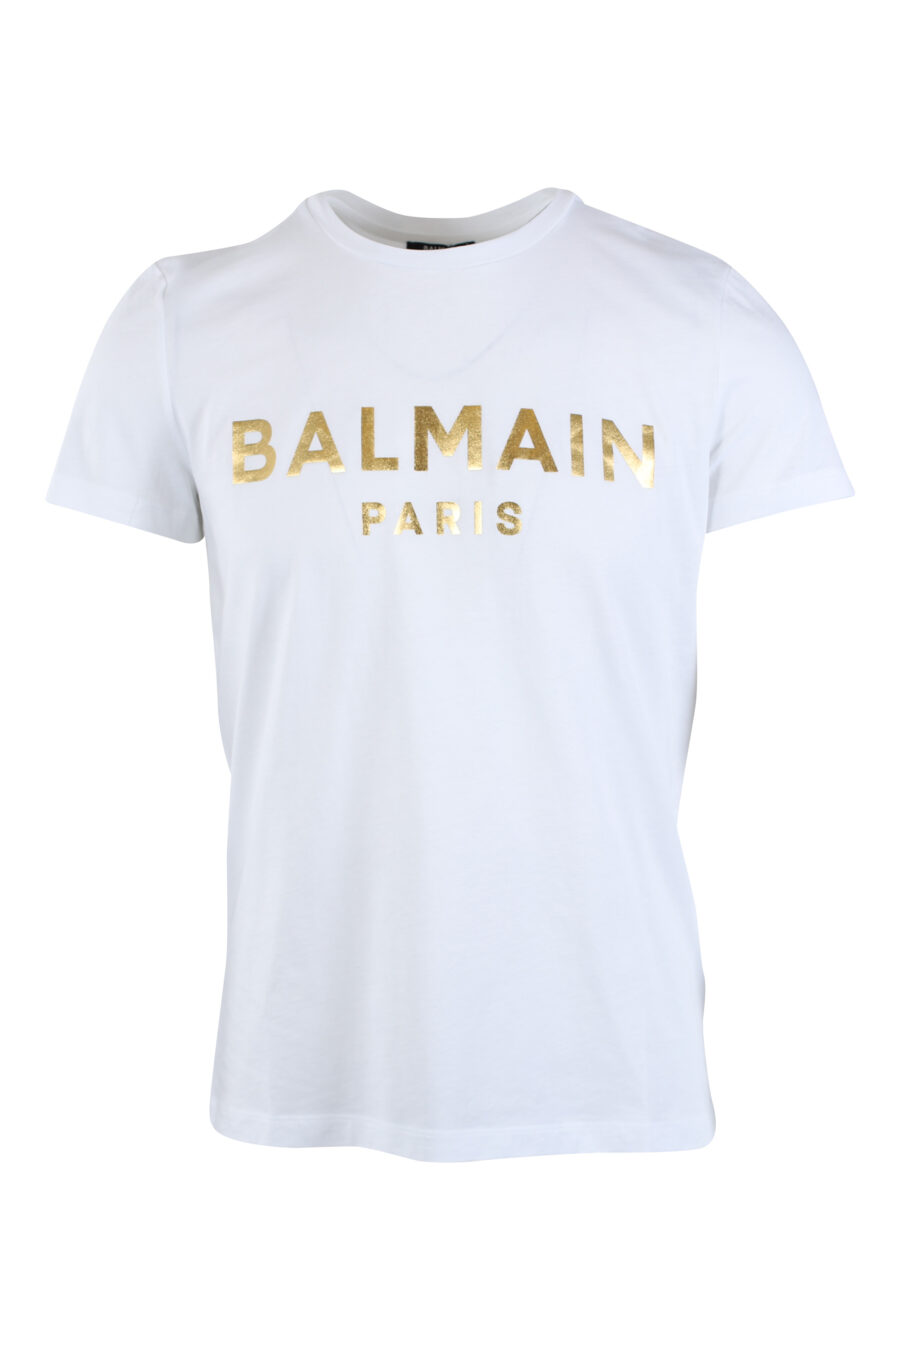 Weißes T-Shirt aus Öko-Baumwolle mit goldenem Maxilogo "paris" - IMG 2611